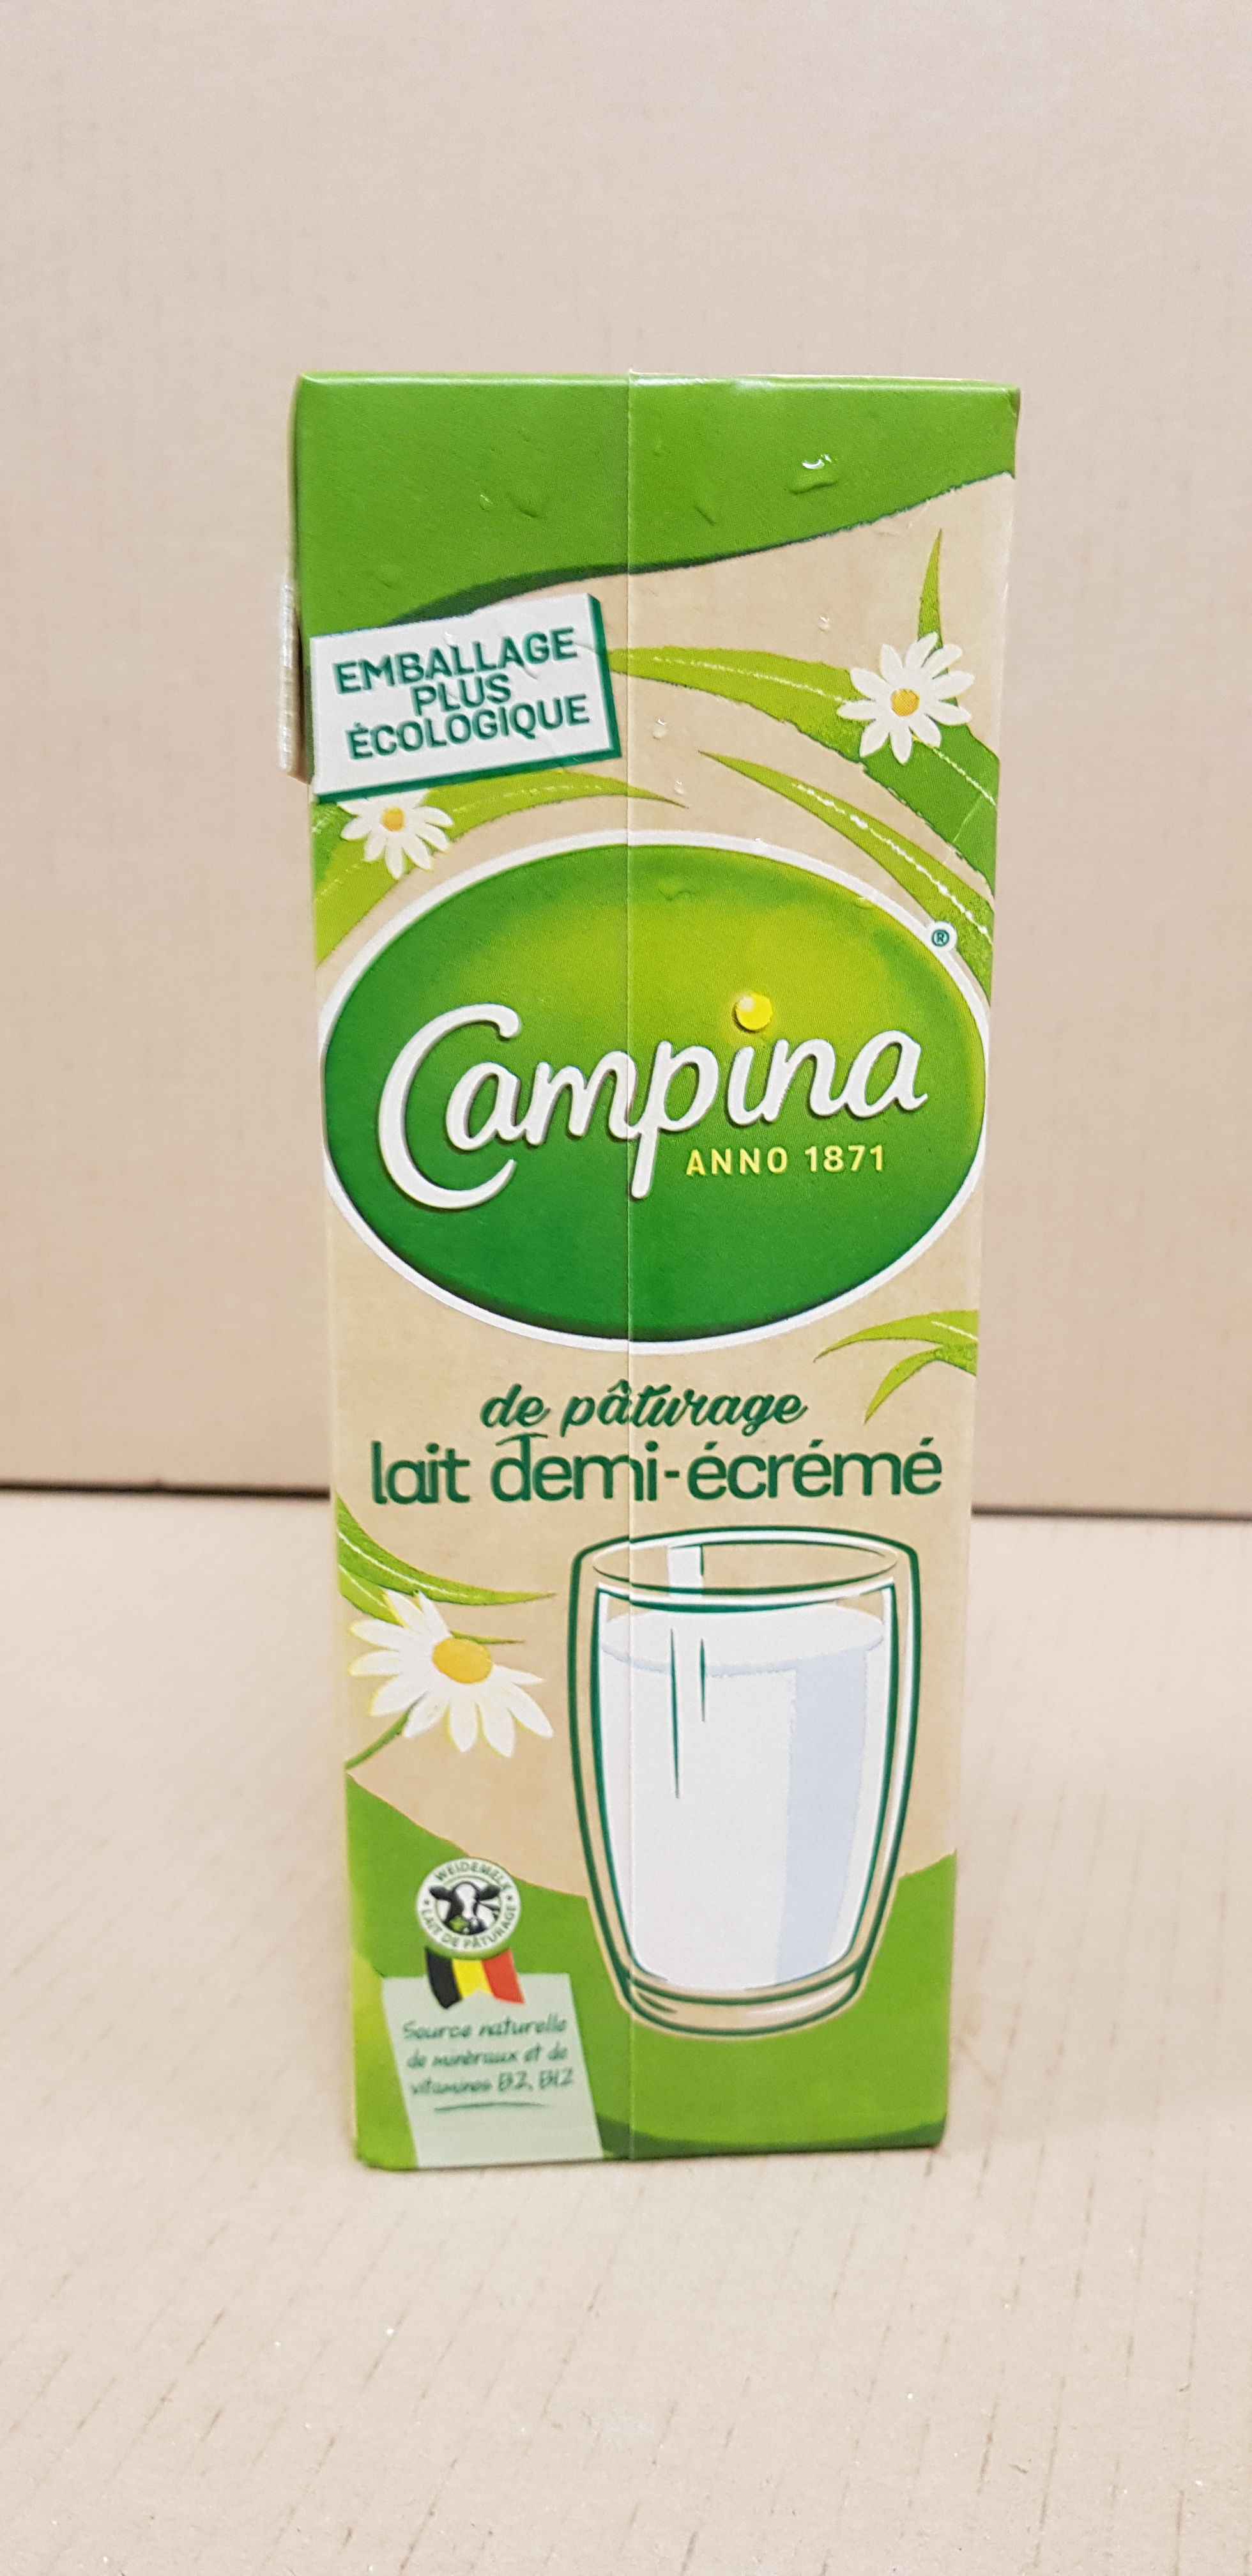 Le lait de pâturage belge désormais dans un carton plus durable